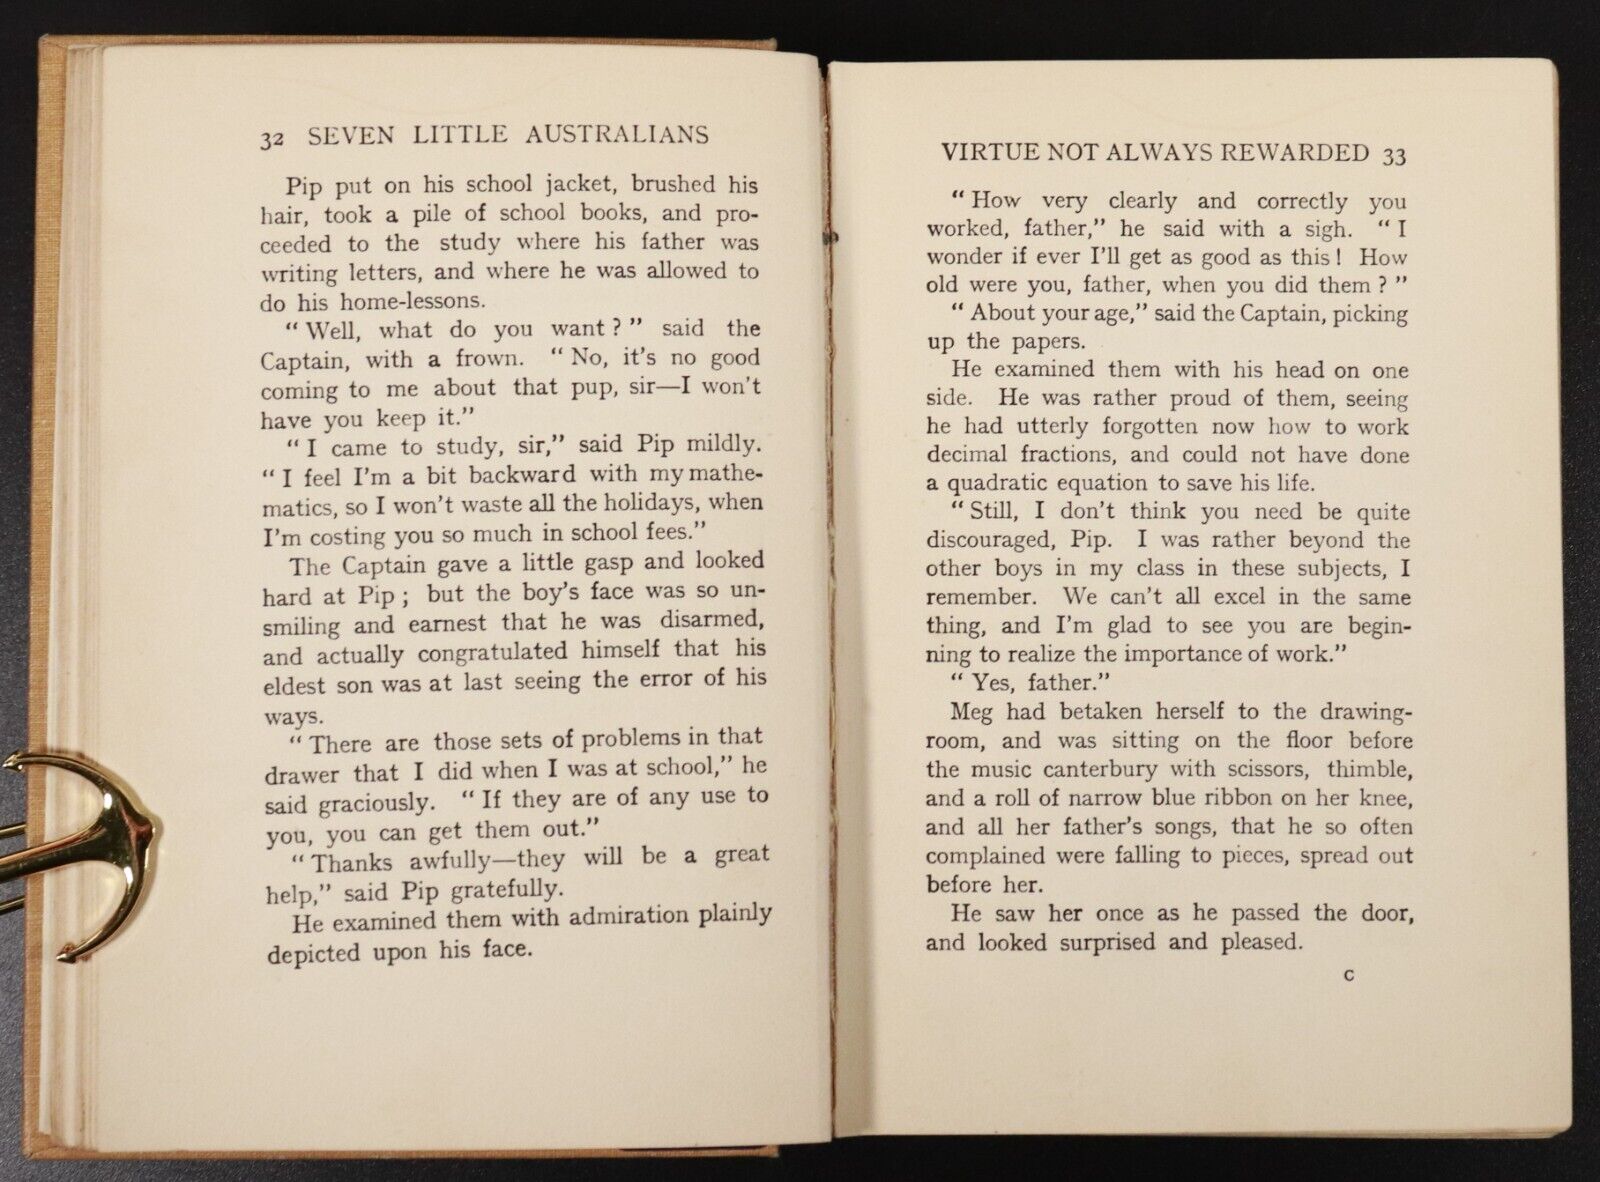 c1912 Seven Little Australians by Ethel Turner Antique Australian Fiction Book